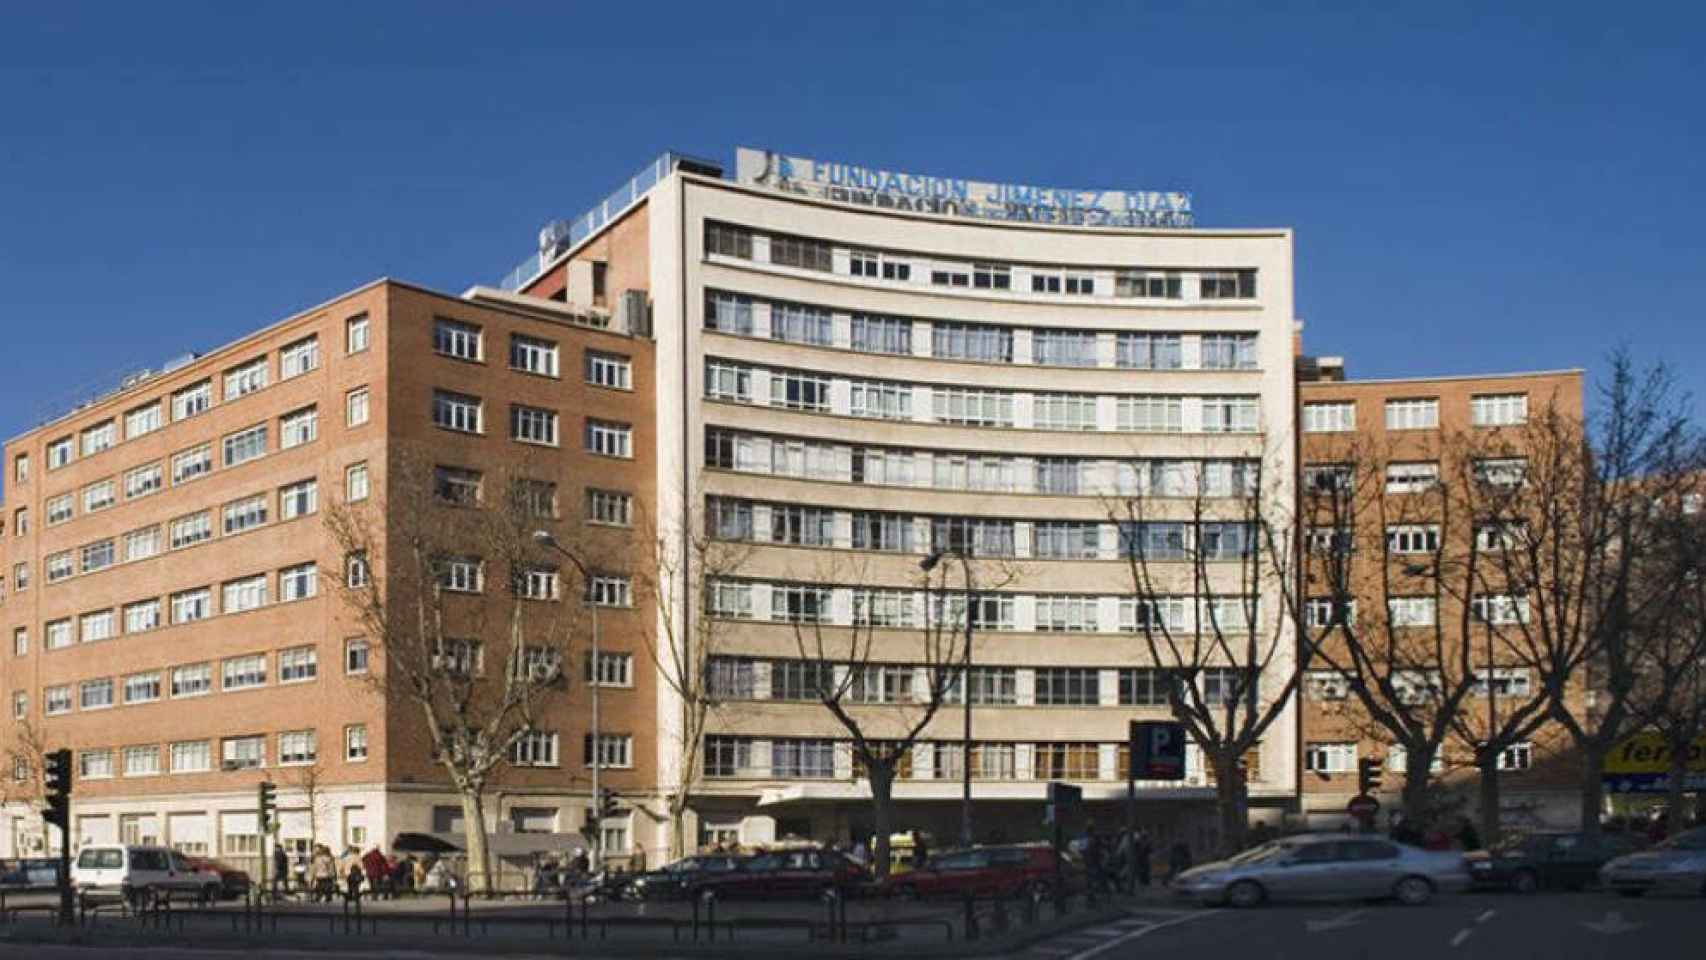 La Fundación Jiménez Díaz, el de menor tiempo de espera en la Comunidad de Madrid